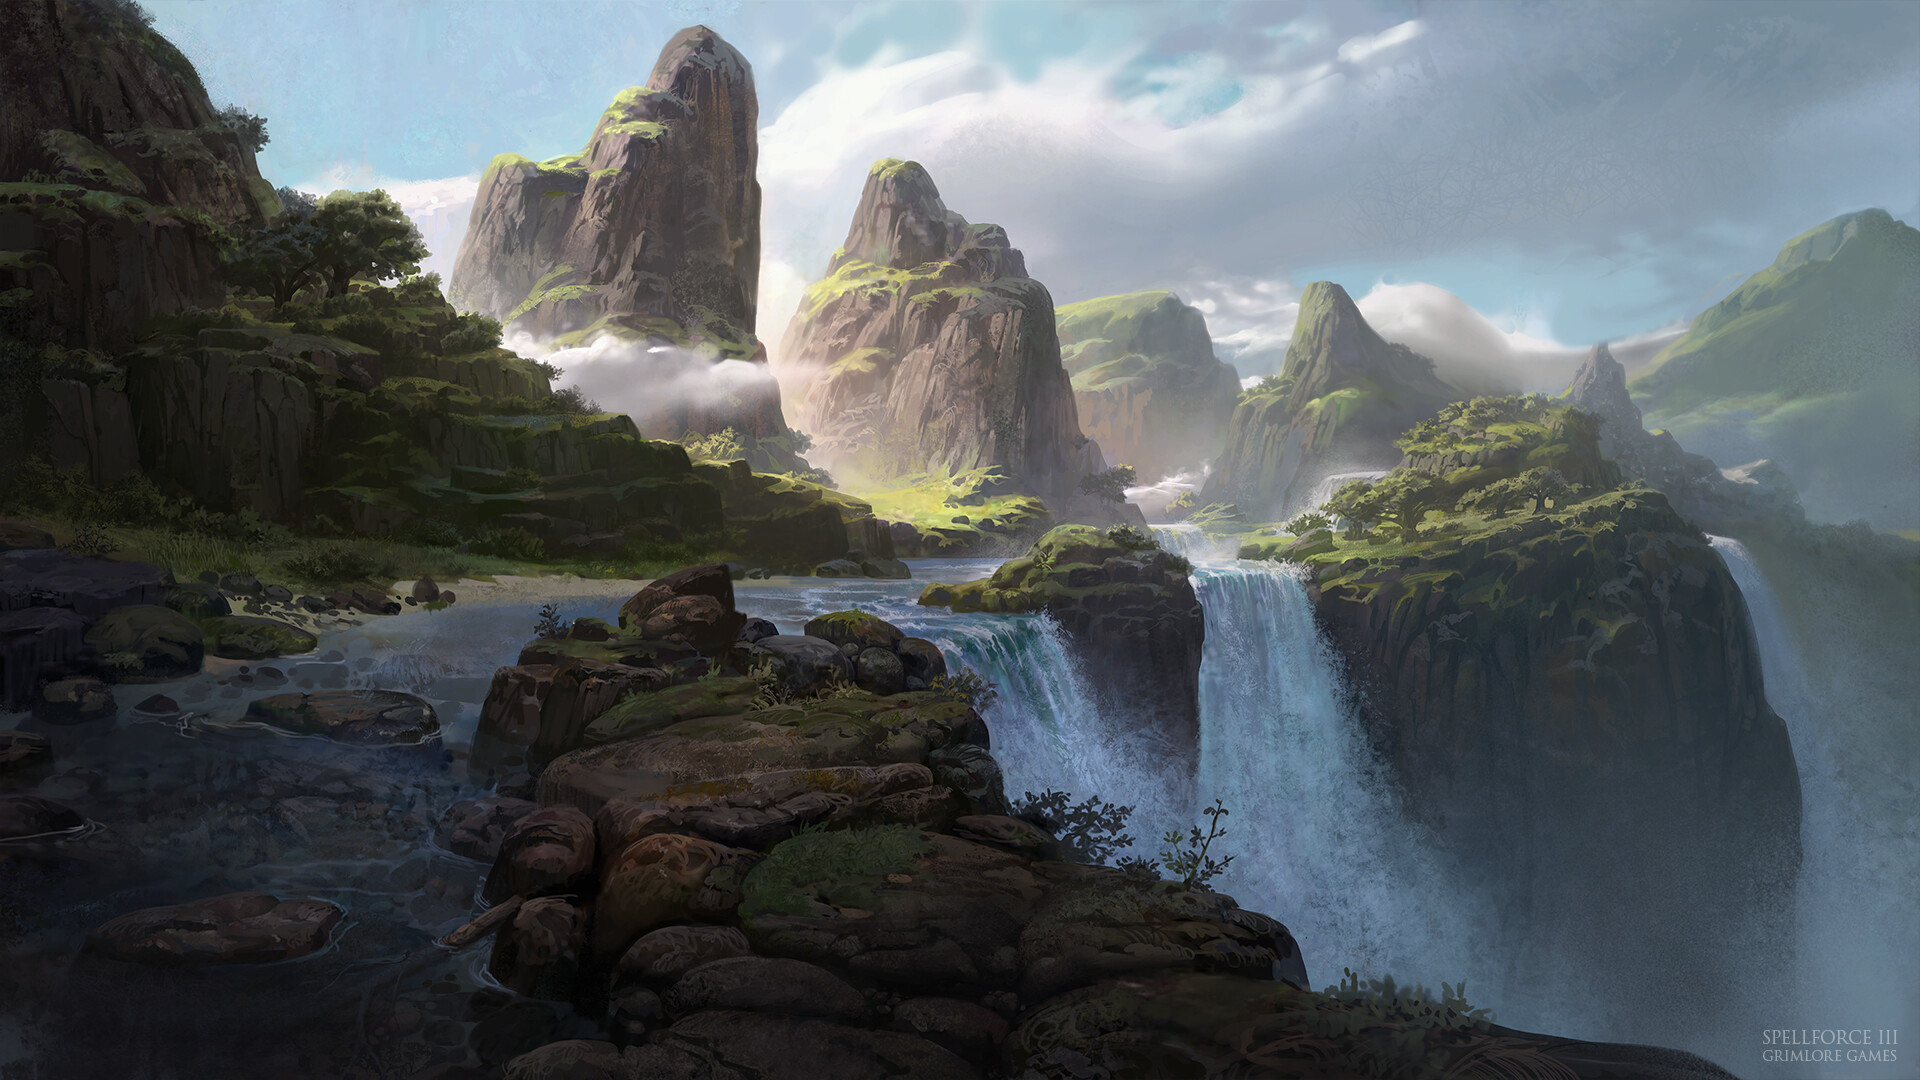 Moritz Lacusteanu Waterfall Mountains Jungle Landscape Digital Art SpellForce 3 Video Game Art Light 1920x1080